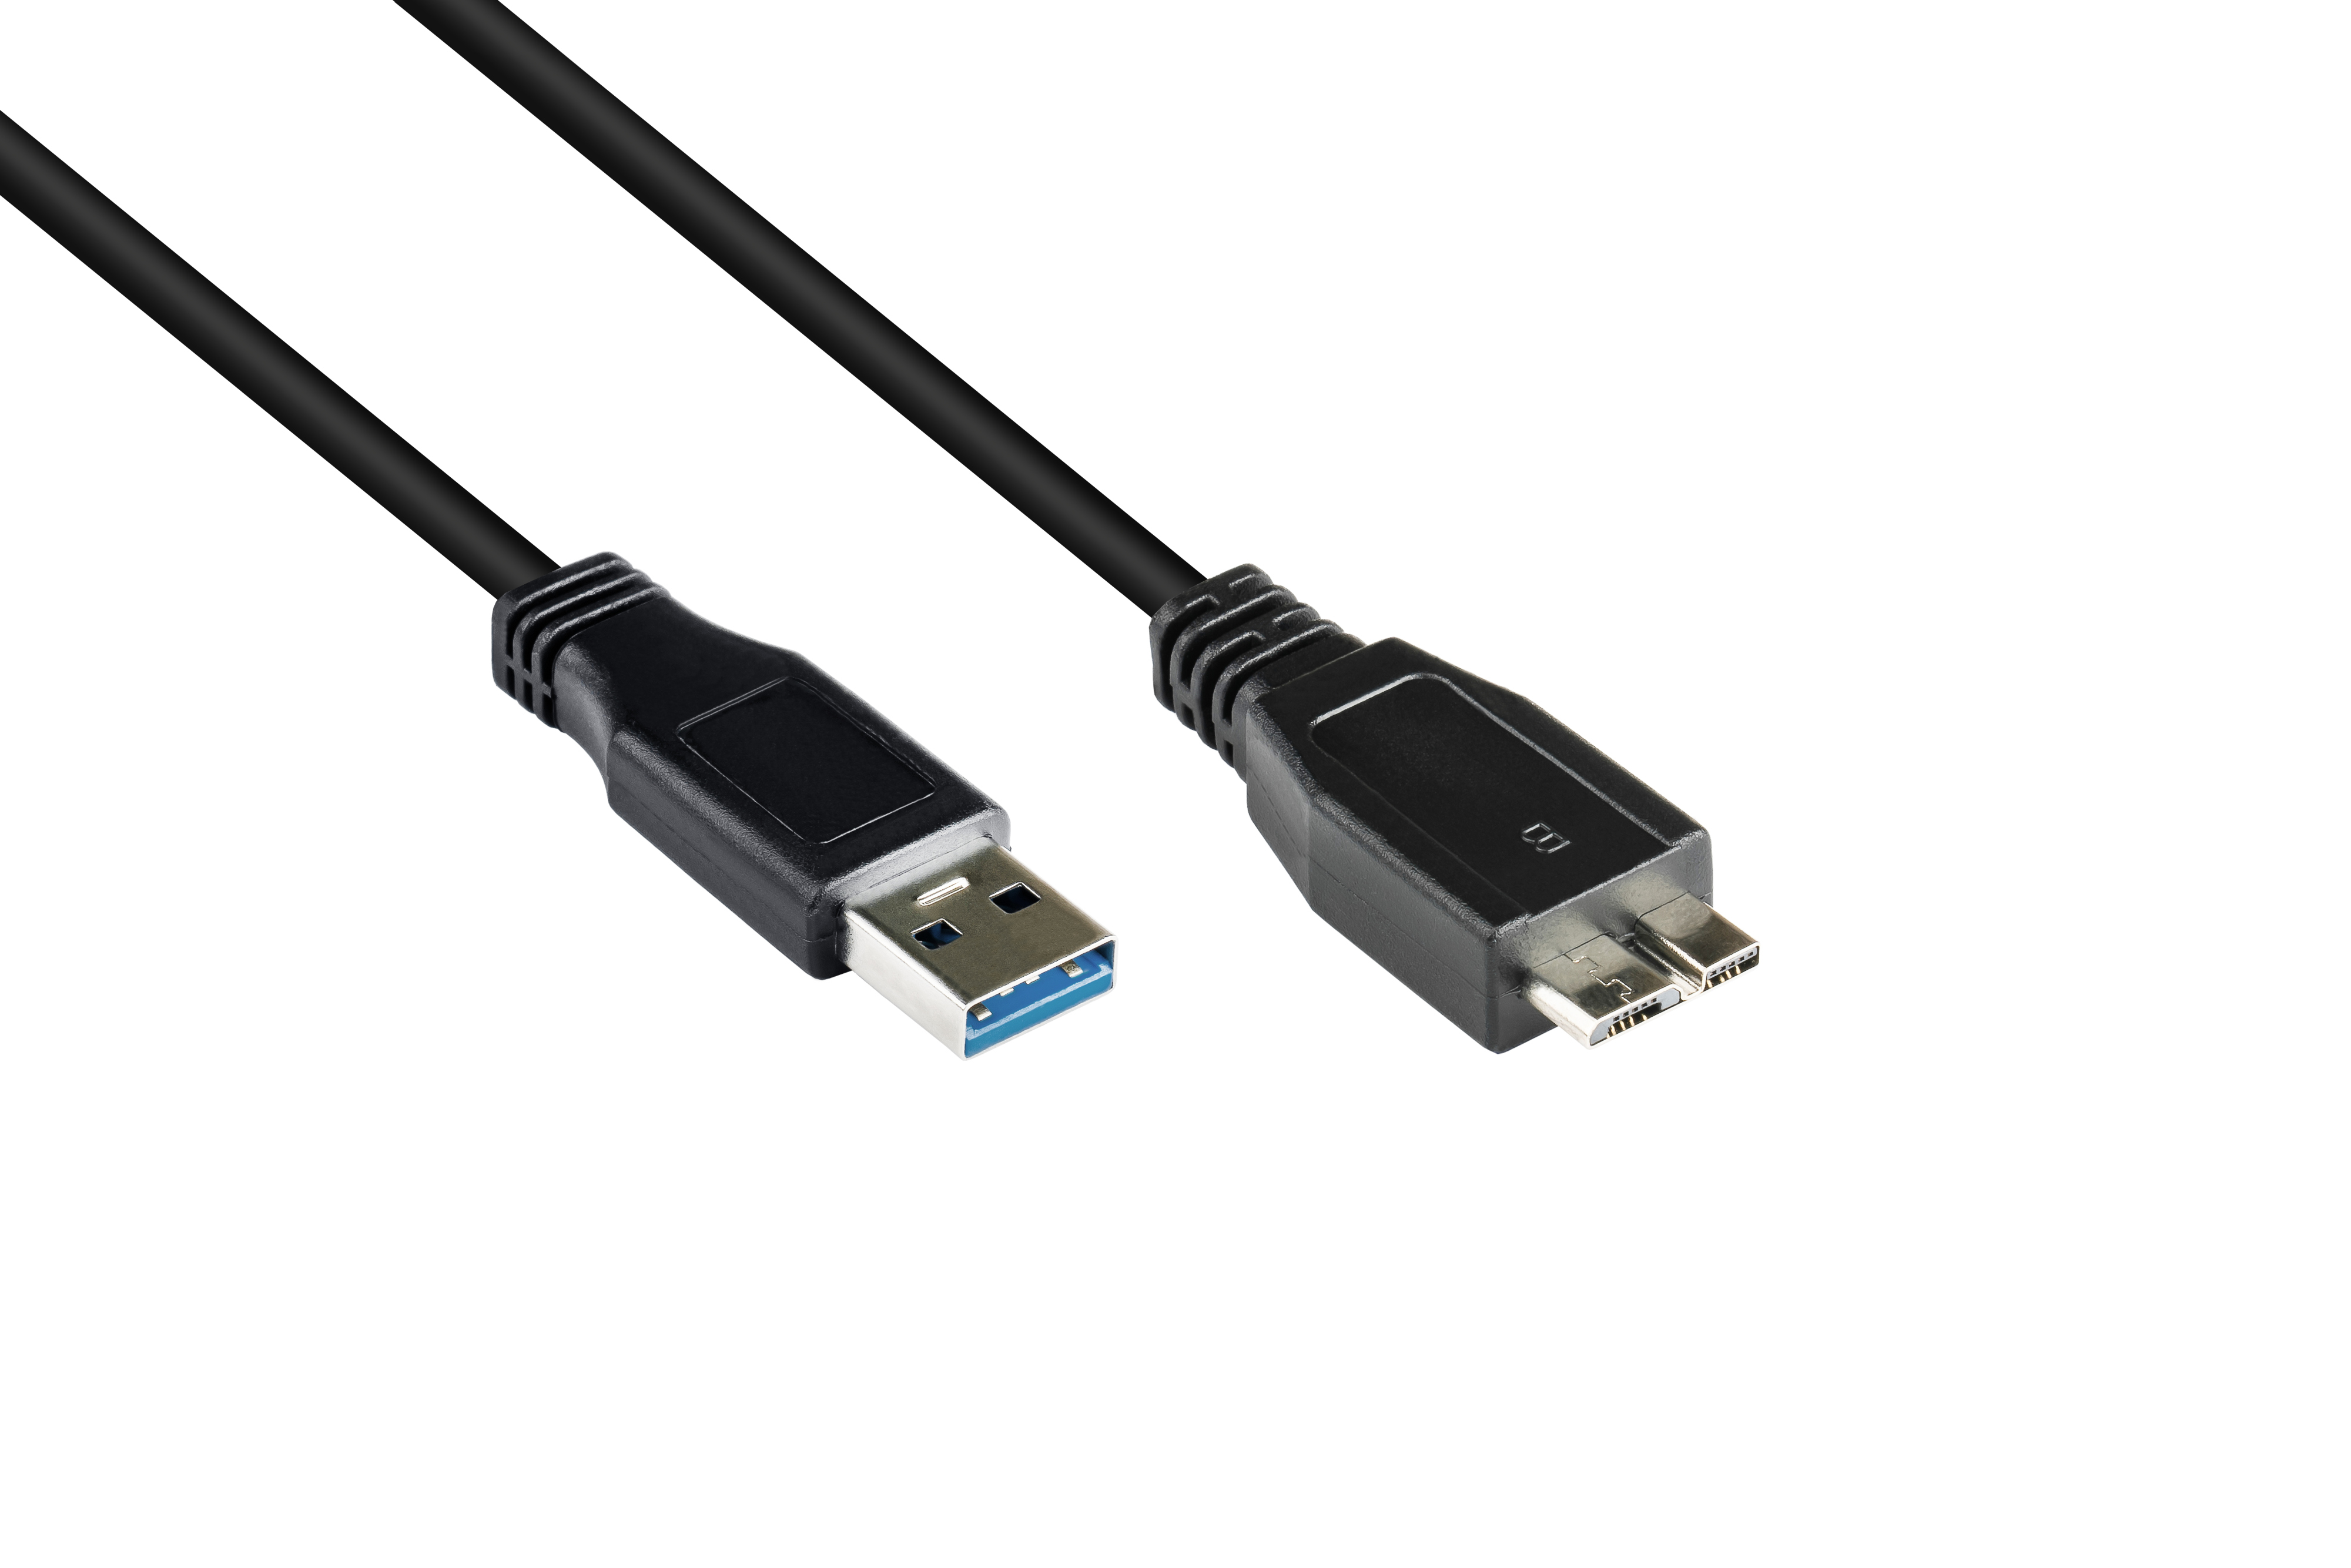 3.0 Stecker CONNECTIONS Stecker an Anschlusskabel GOOD schwarz Micro A B, USB